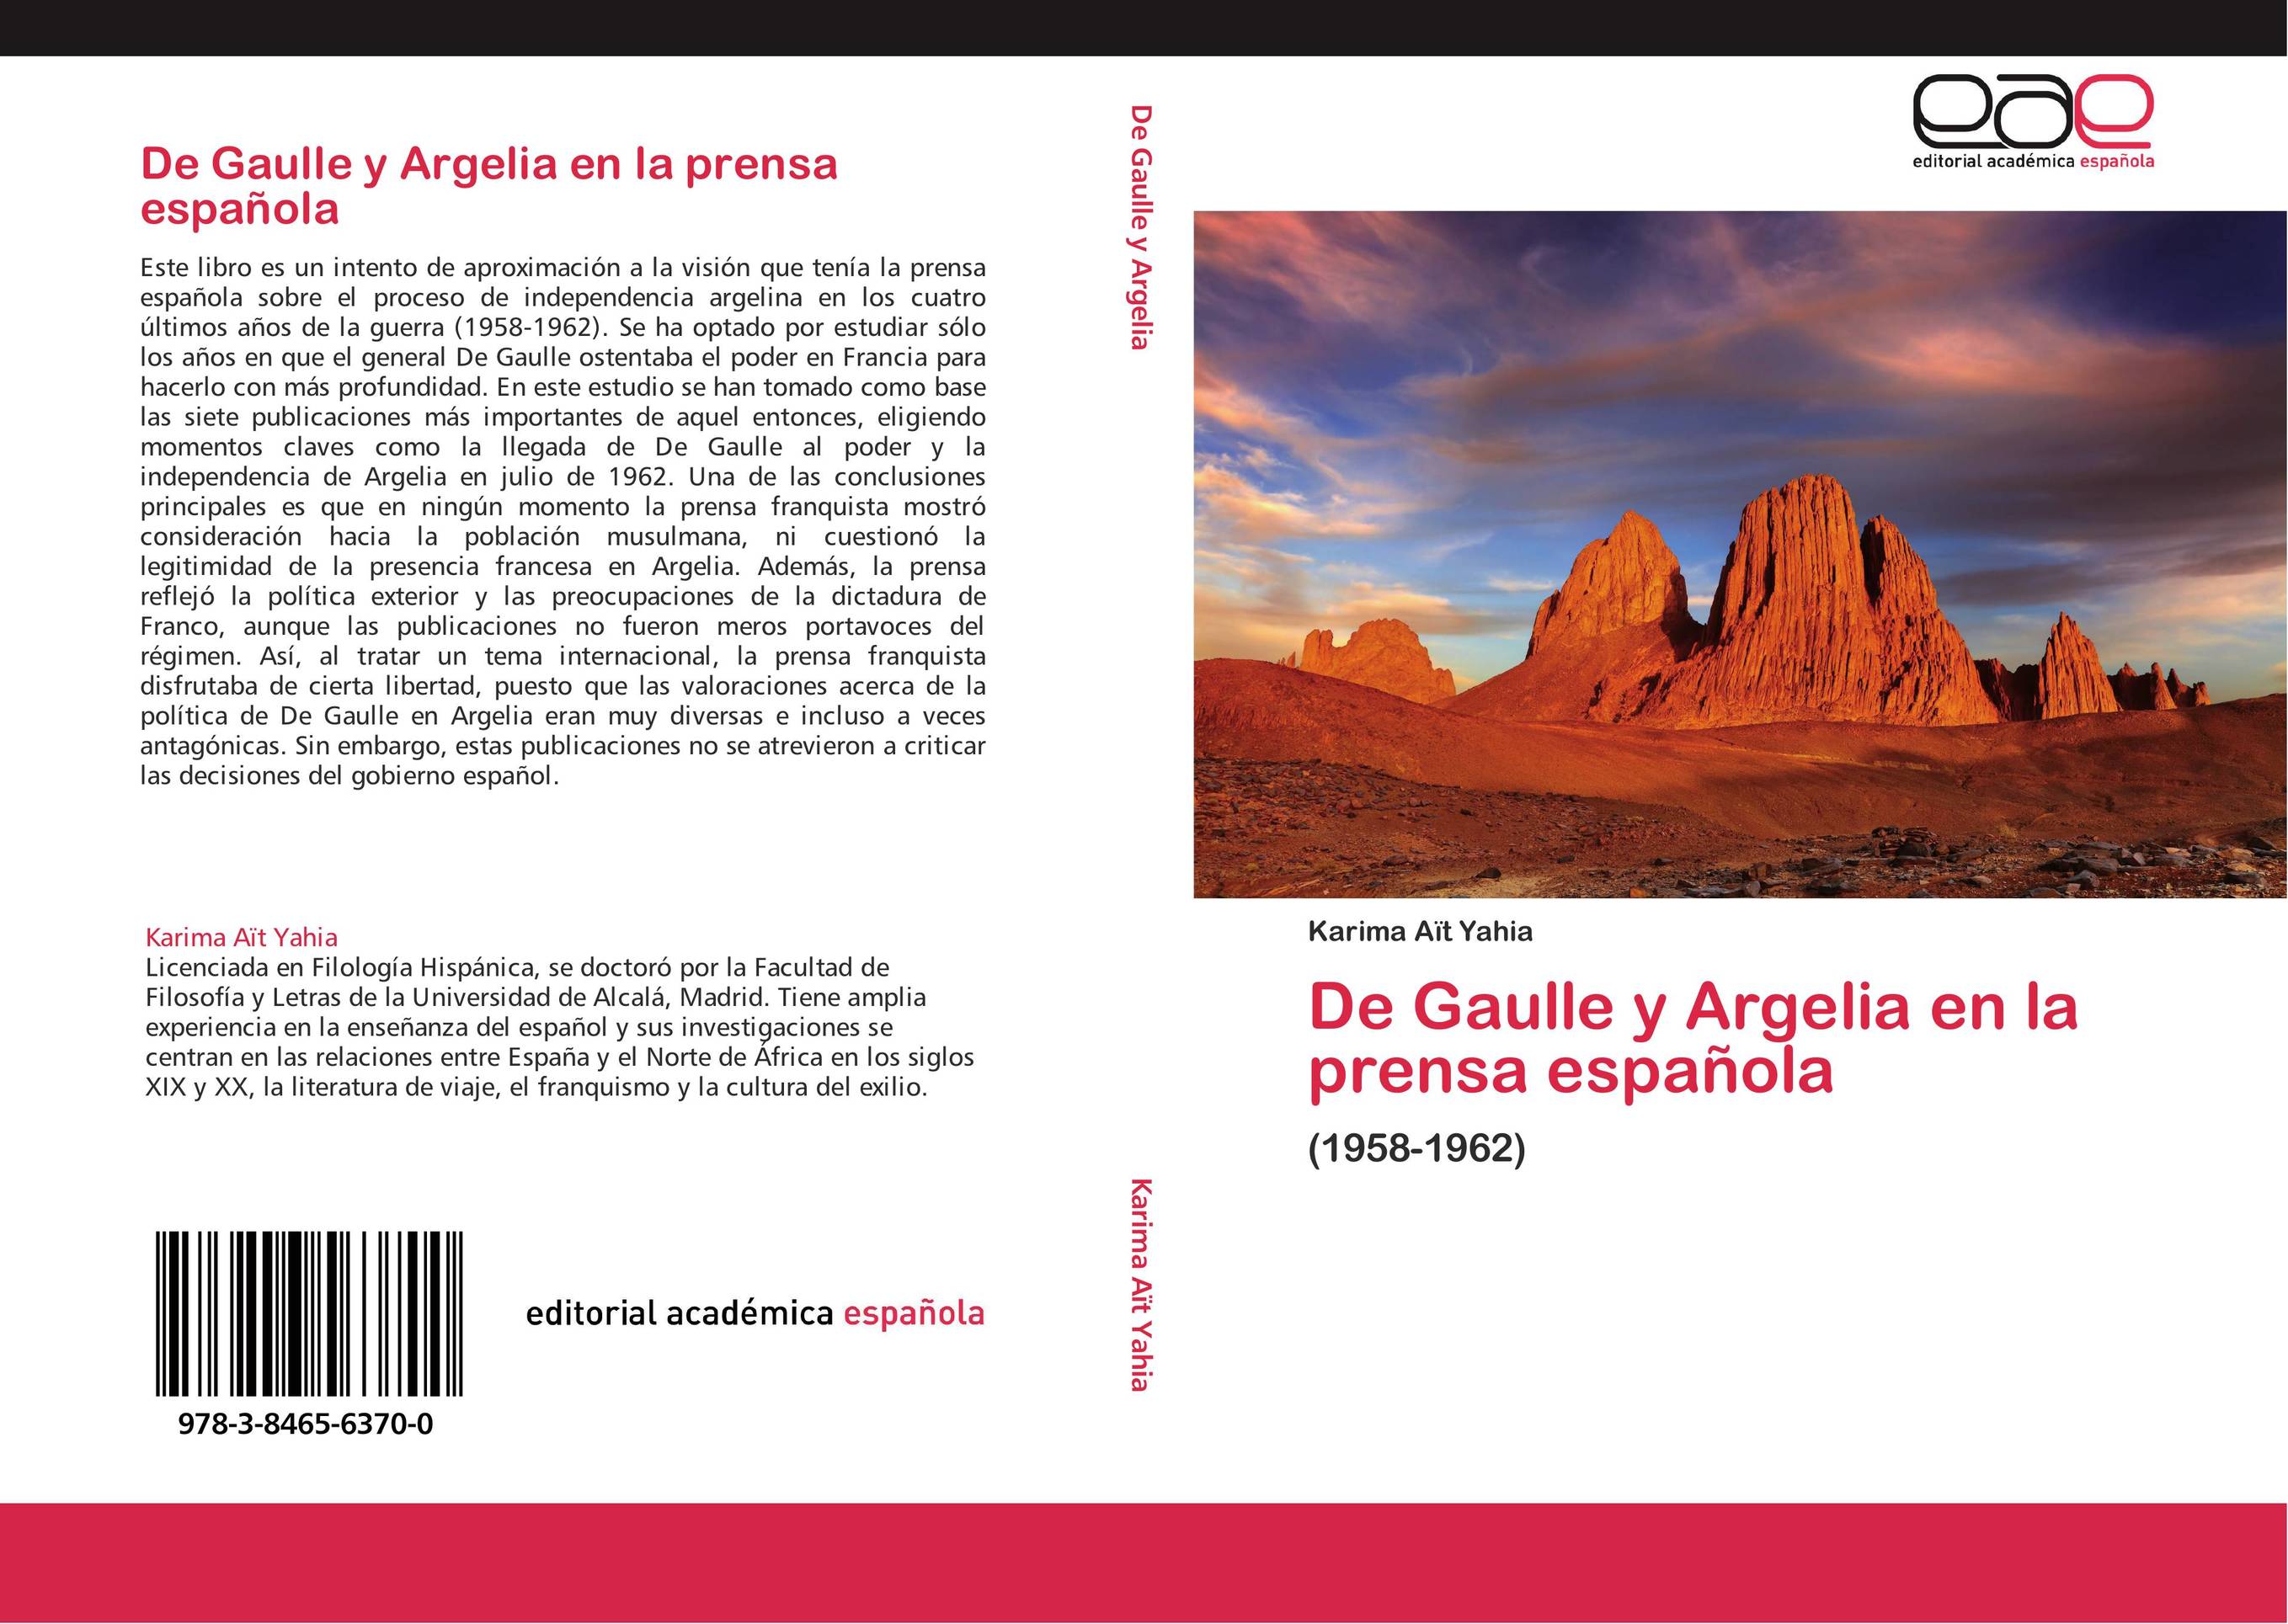 De Gaulle y Argelia en la prensa española